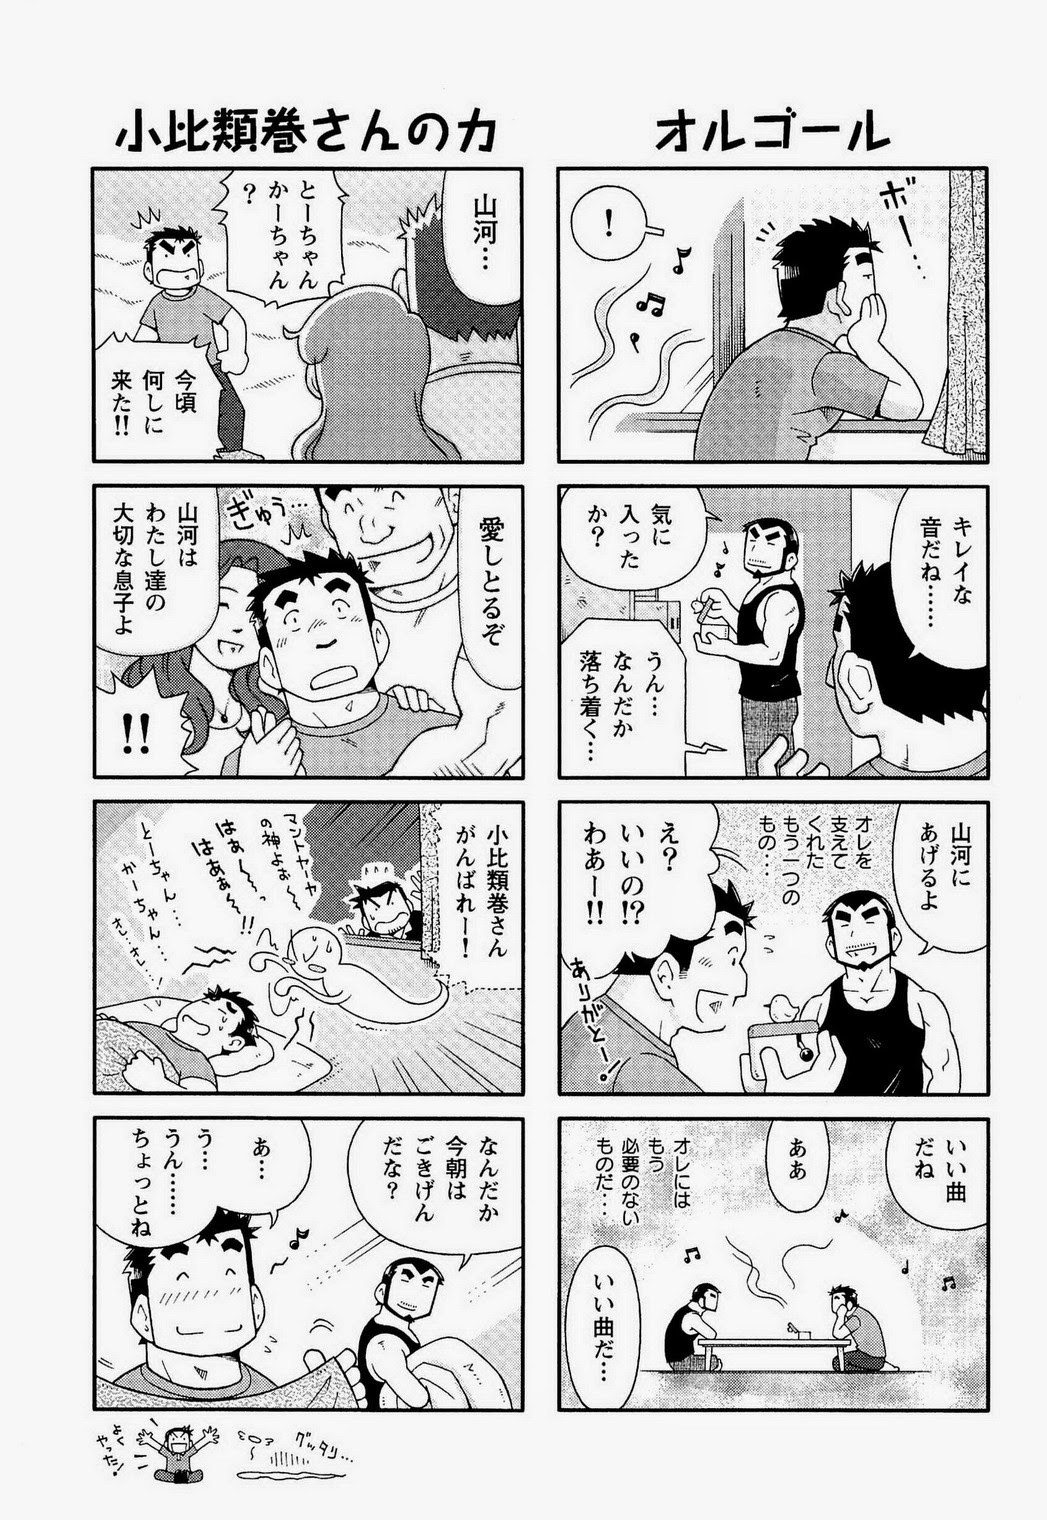 Noda Gaku Nodaガク Kaiga Monogatari 海河物語